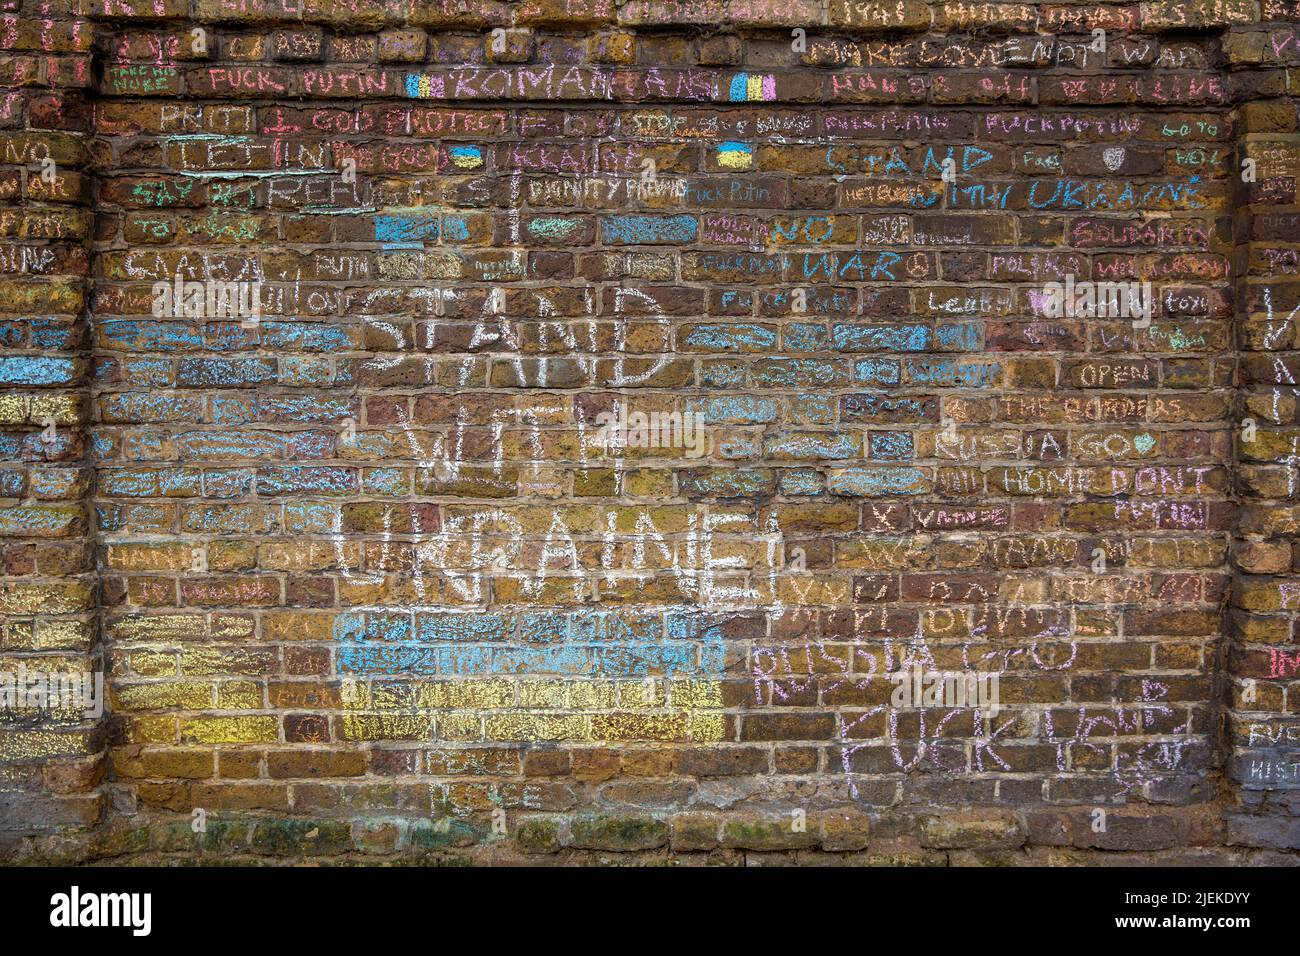 Des messages contre l’invasion de l’Ukraine par la Russie et des messages à l’appui de l’Ukraine sont visibles près de l’ambassade de Russie à Londres. Banque D'Images